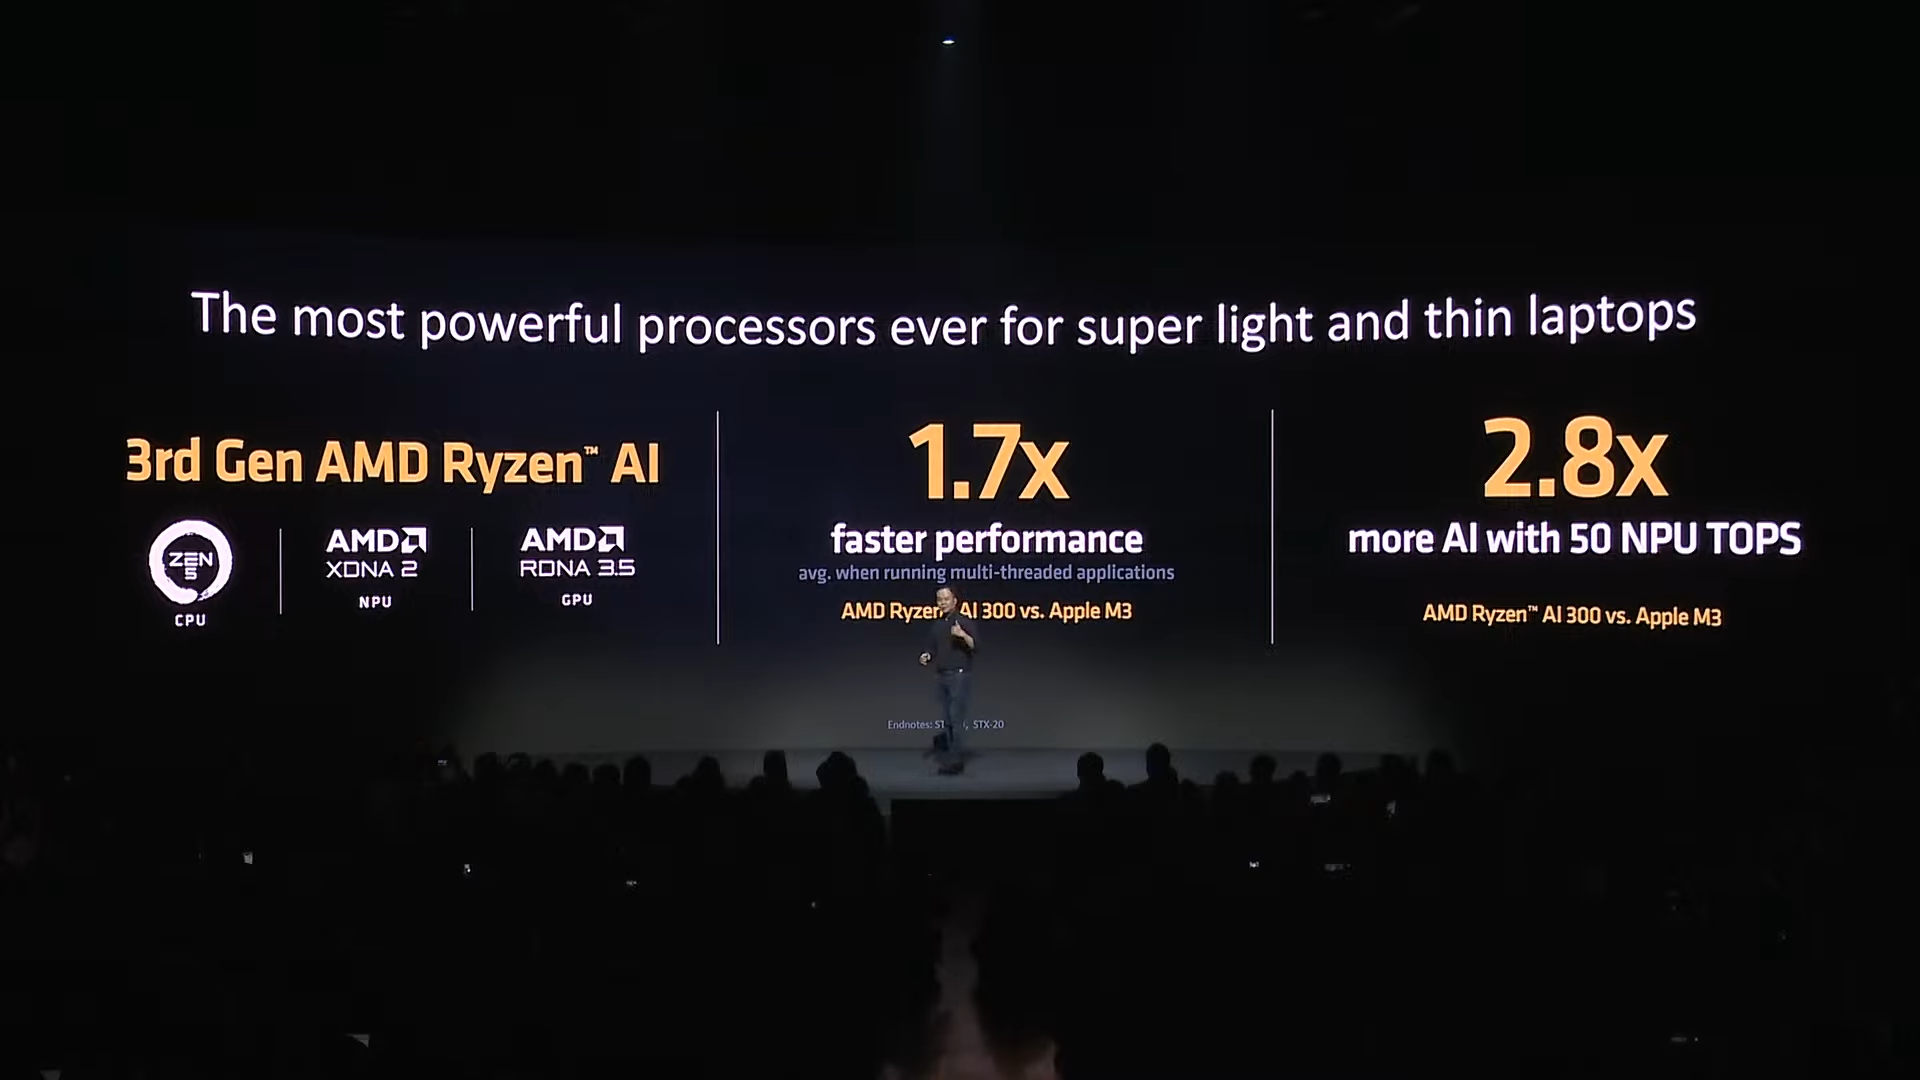 Asus утверждает, что ее Zenbook S16 превосходит MacBook по мощности и портативности: вот почему я думаю, что Asus прав